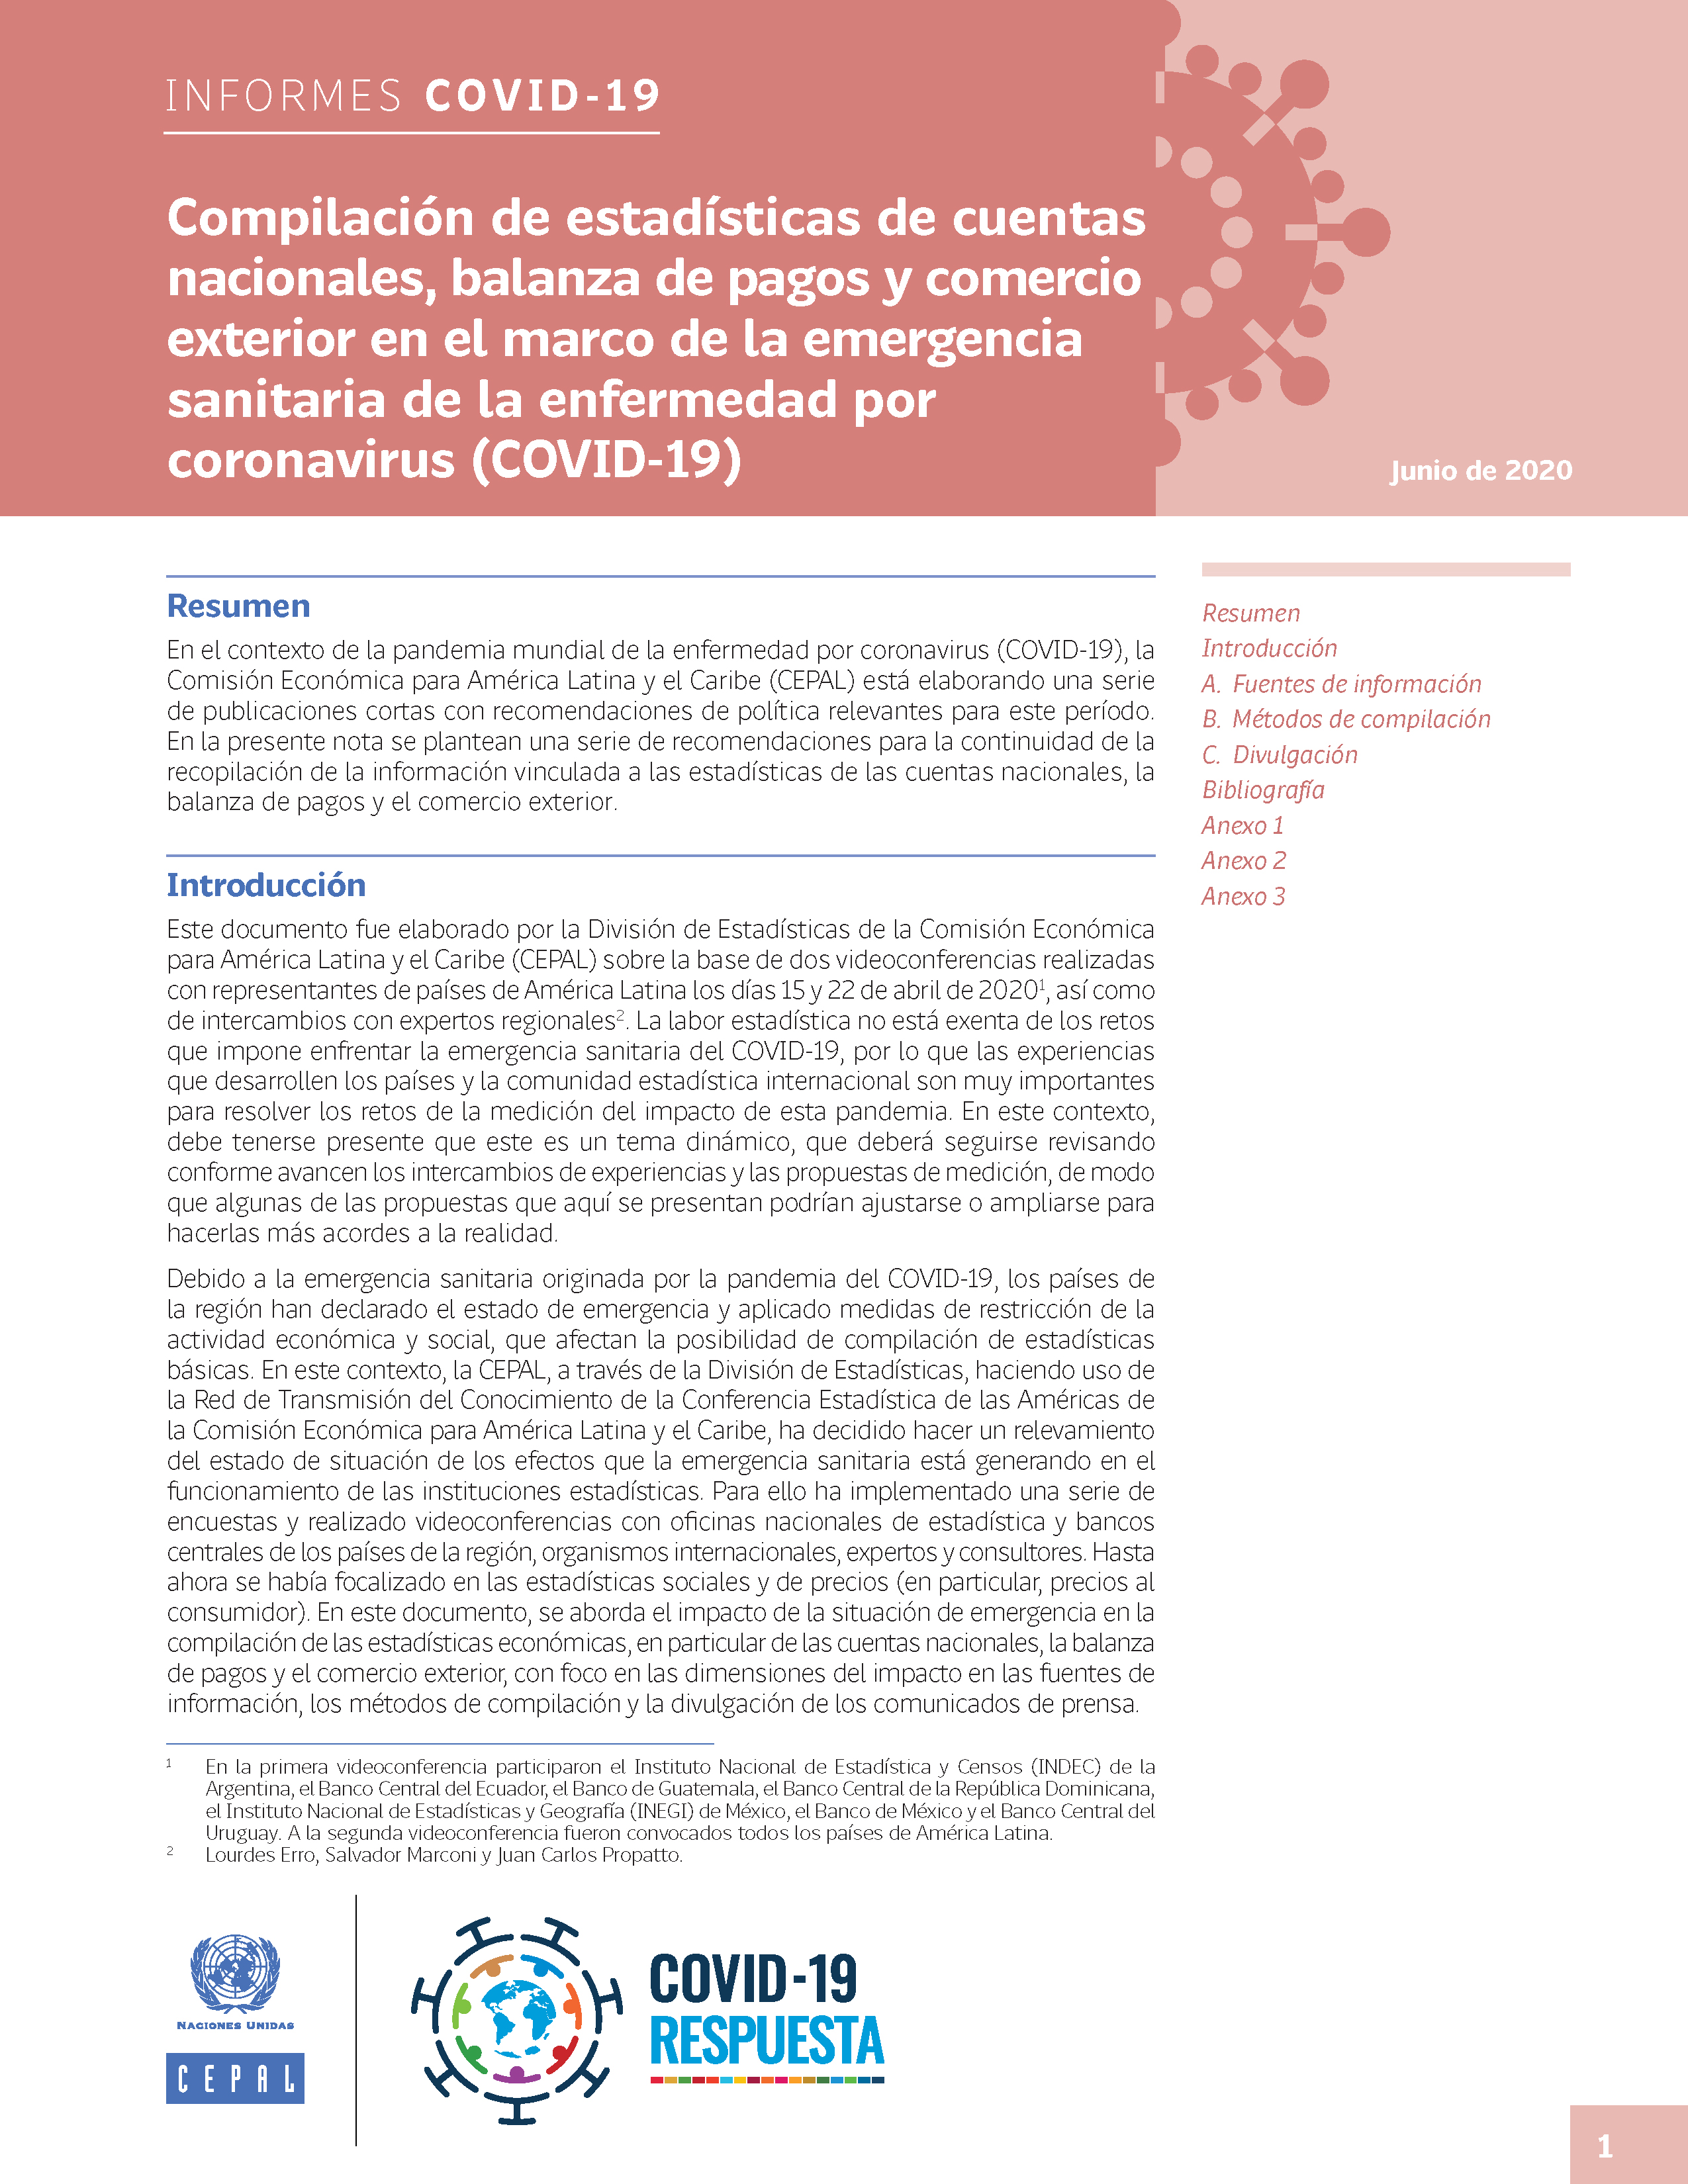 image of Compilación de estadísticas de cuentas nacionales, balanza de pagos y comercio exterior en el marco de la emergencia sanitaria de la enfermedad por coronavirus (COVID-19)